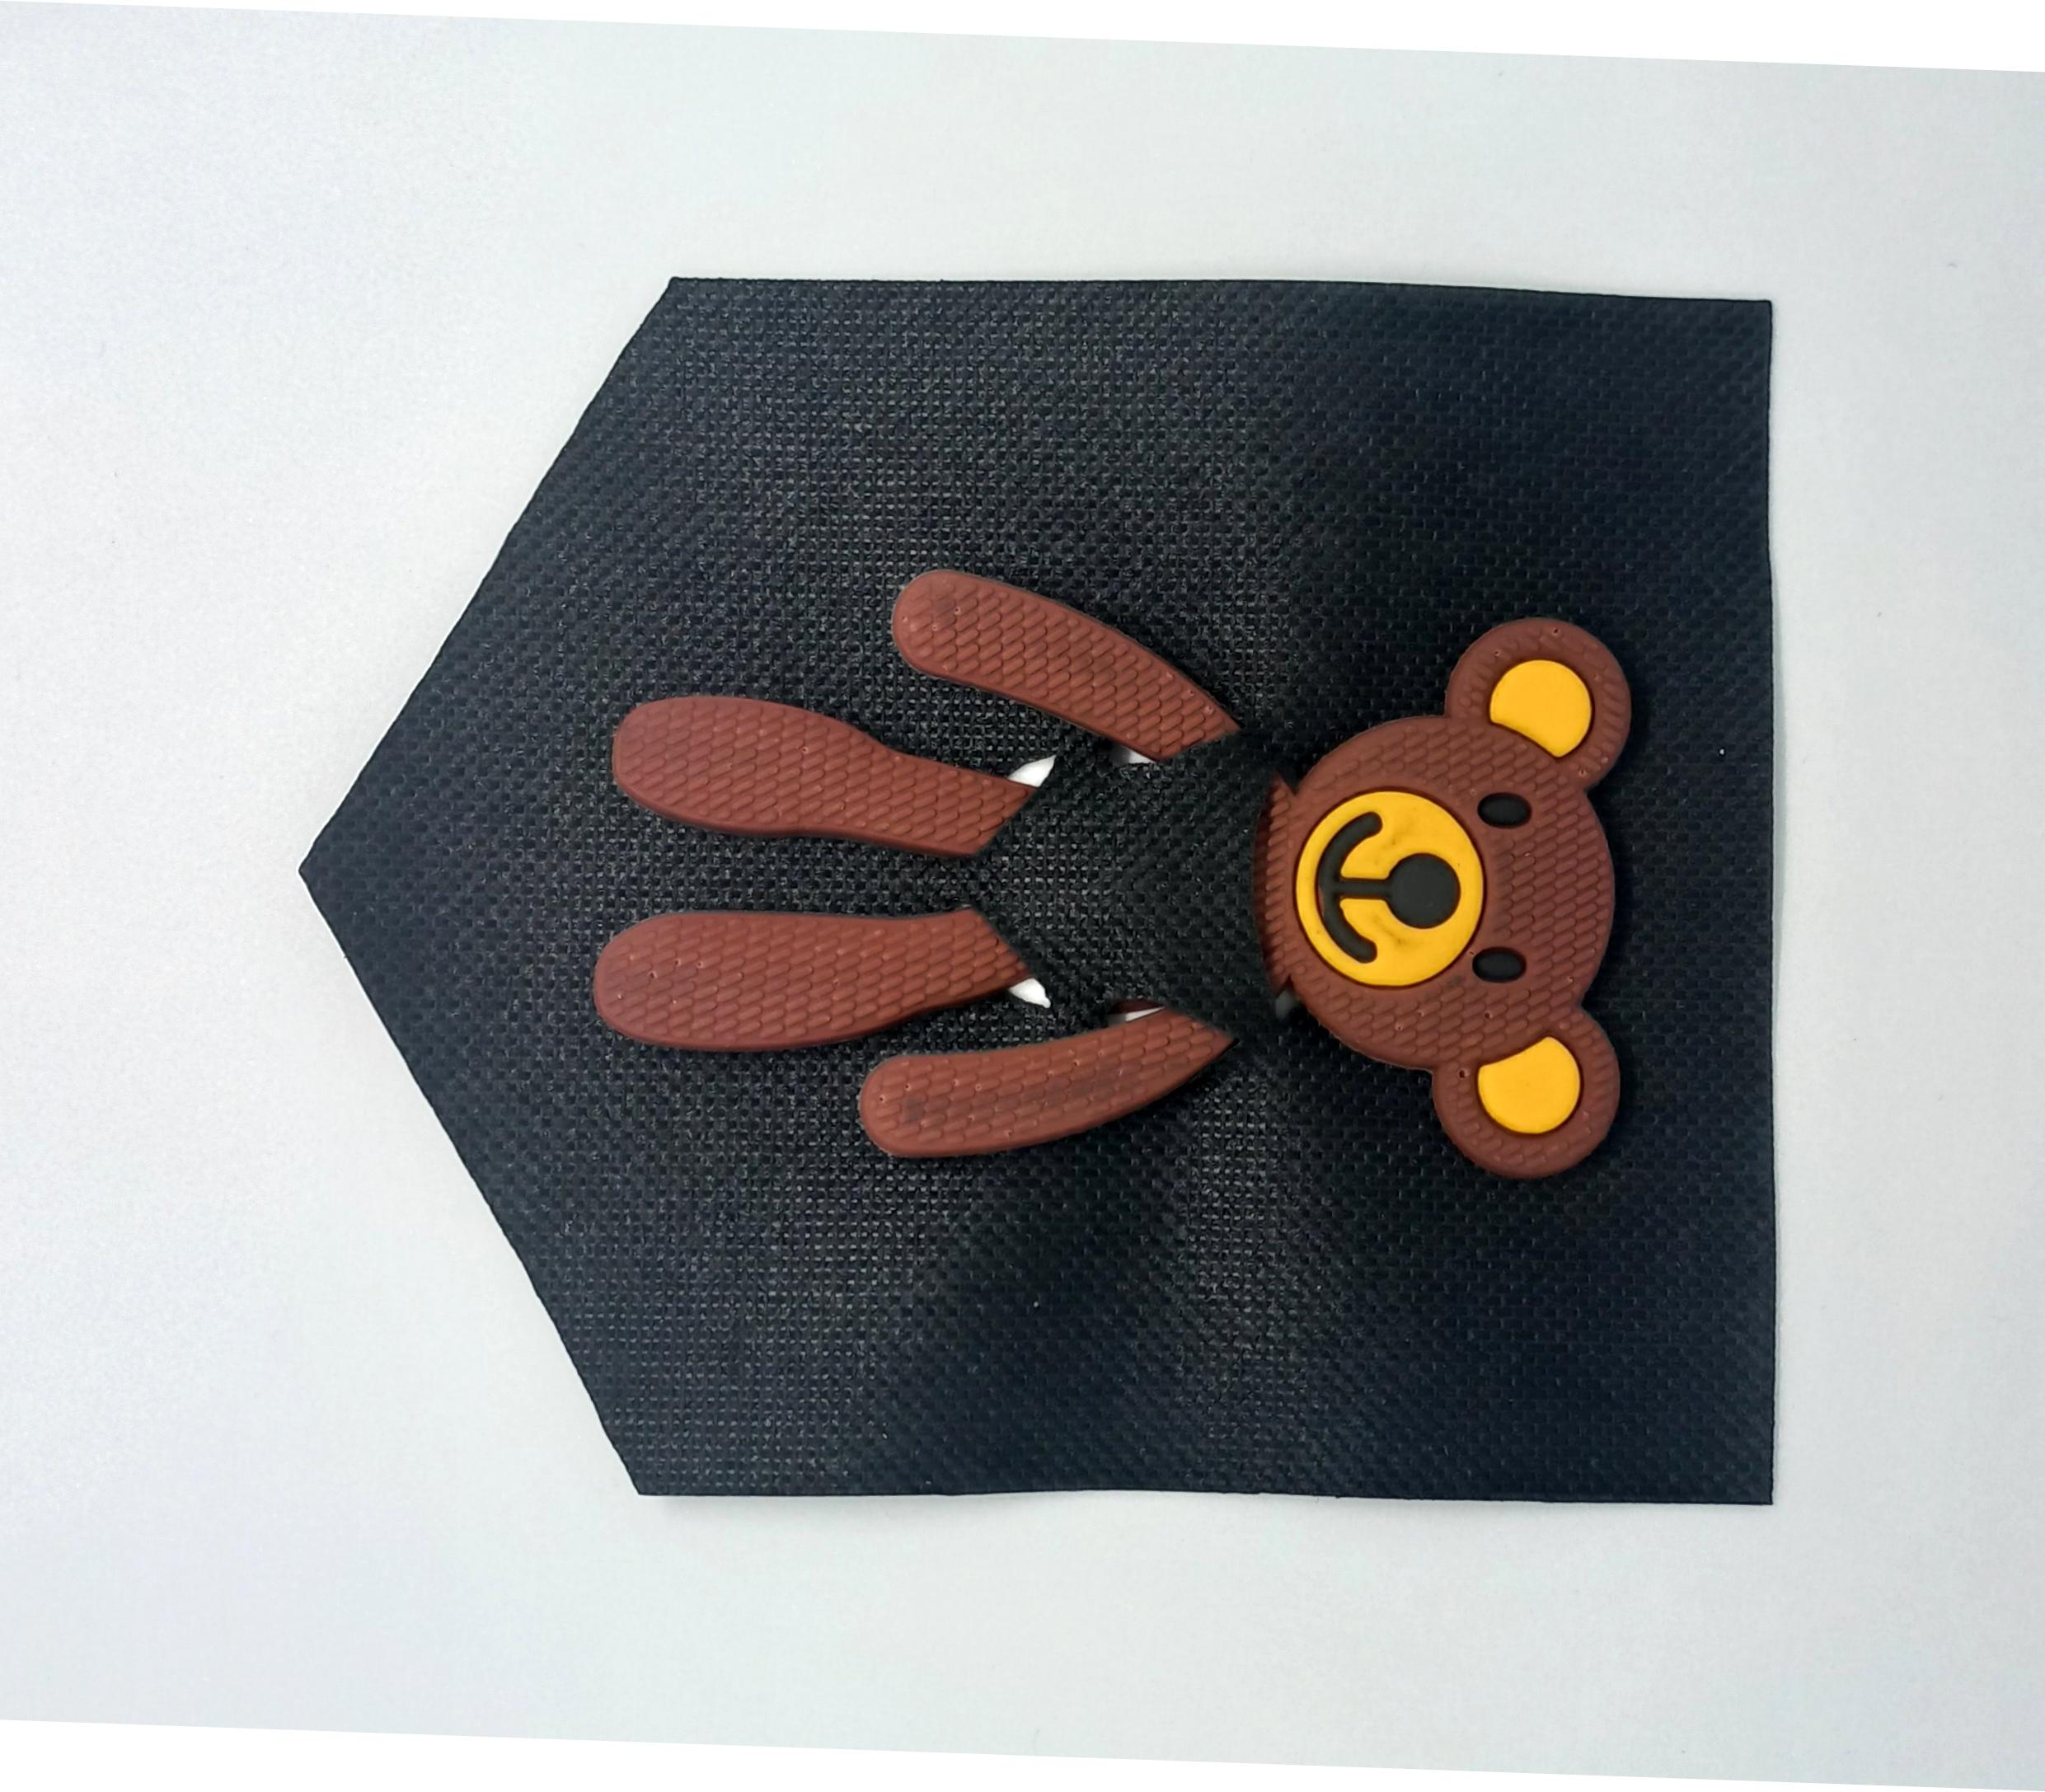 Лейба ткань и резина Мишка в кармане, 8,8*10,5см, черный, коричневый, шт. Лейба Ткань